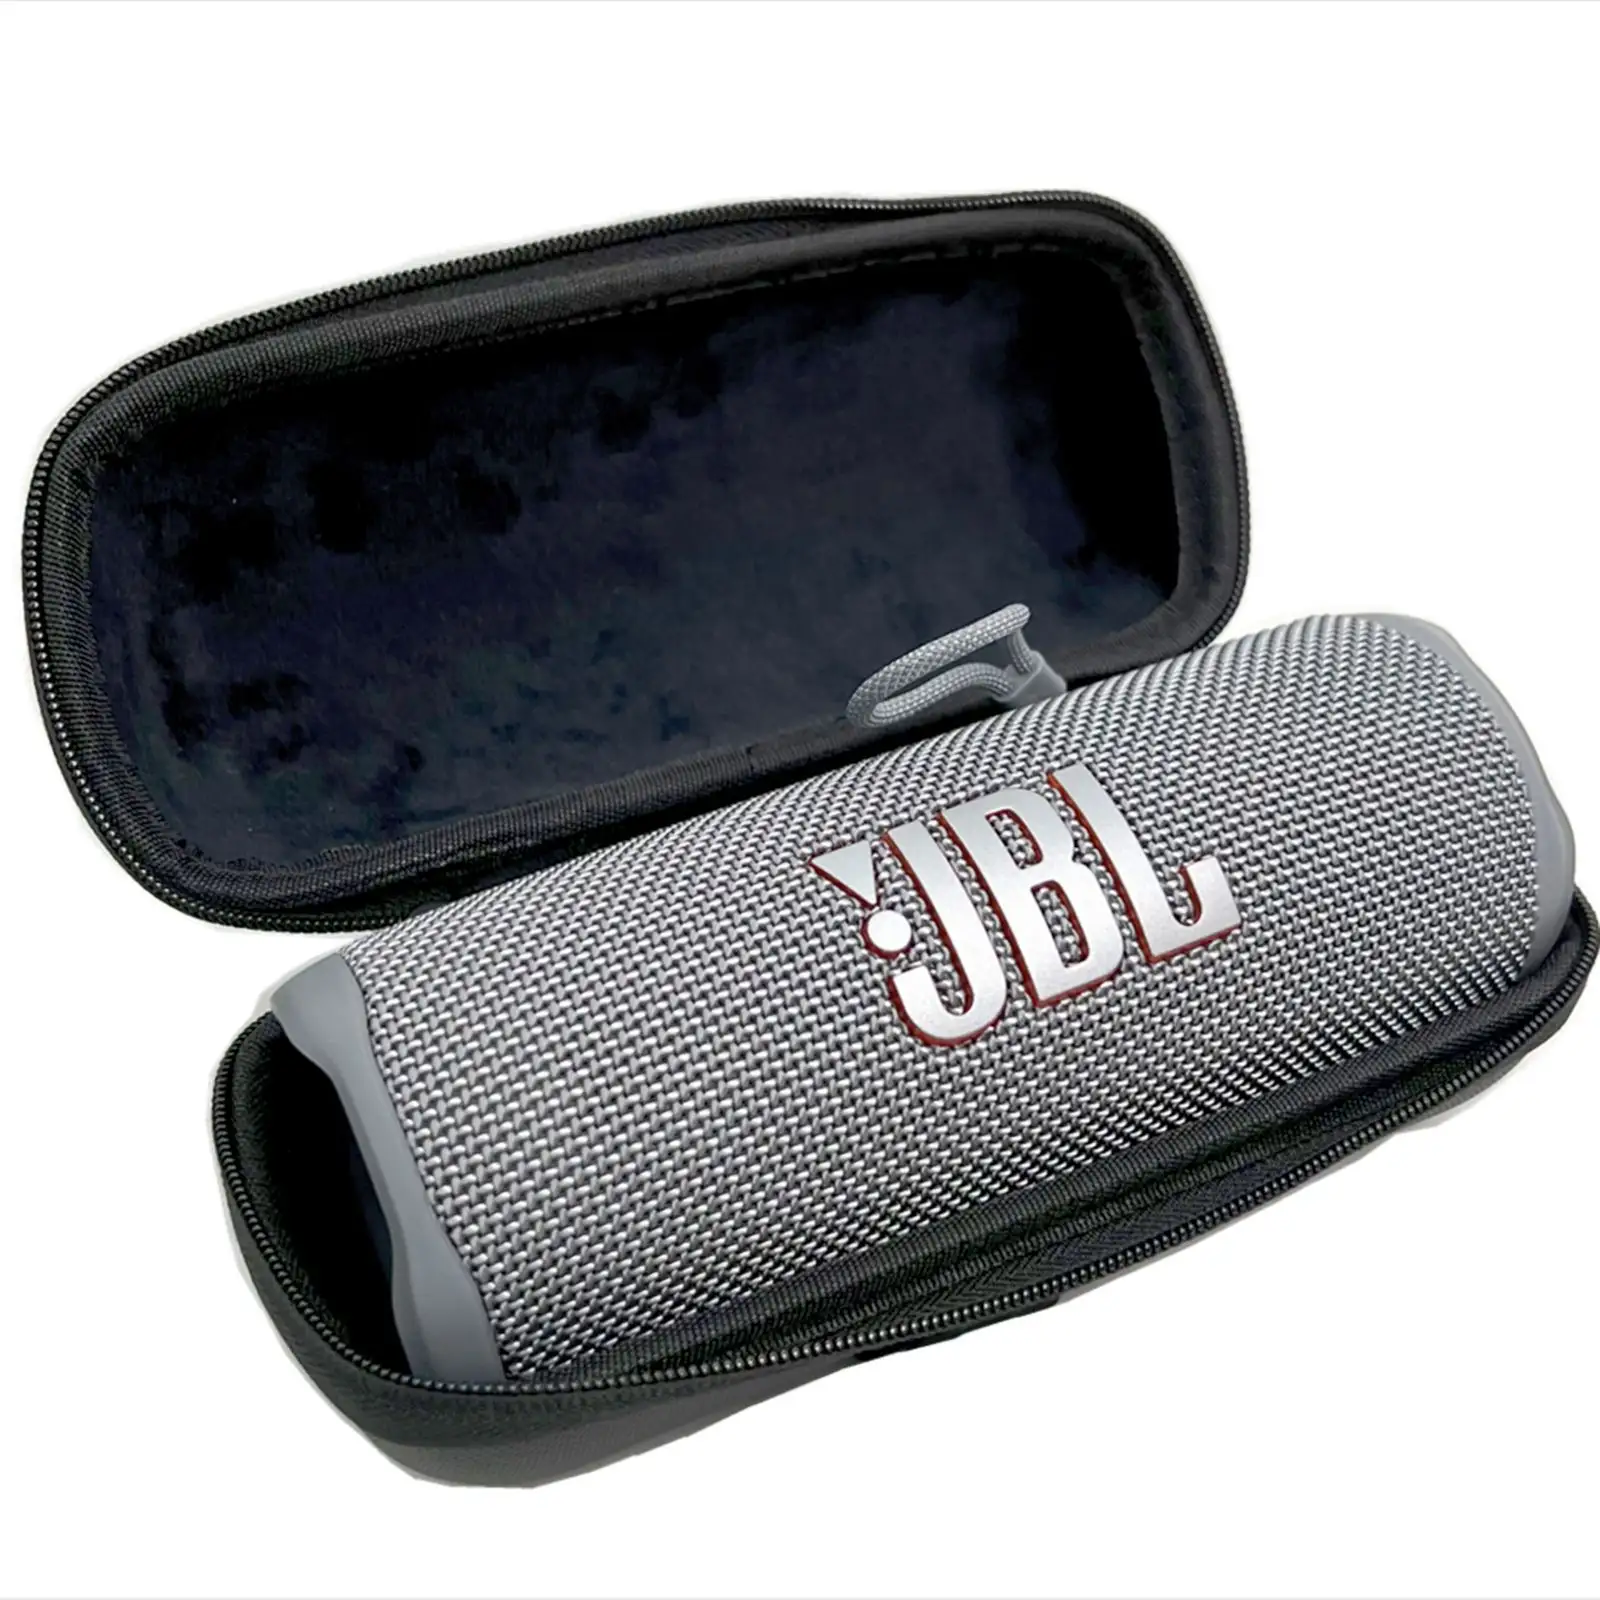 JBL Xtreme 3 taşınabilir hoparlör için Melica sert seyahat çantası değiştirme